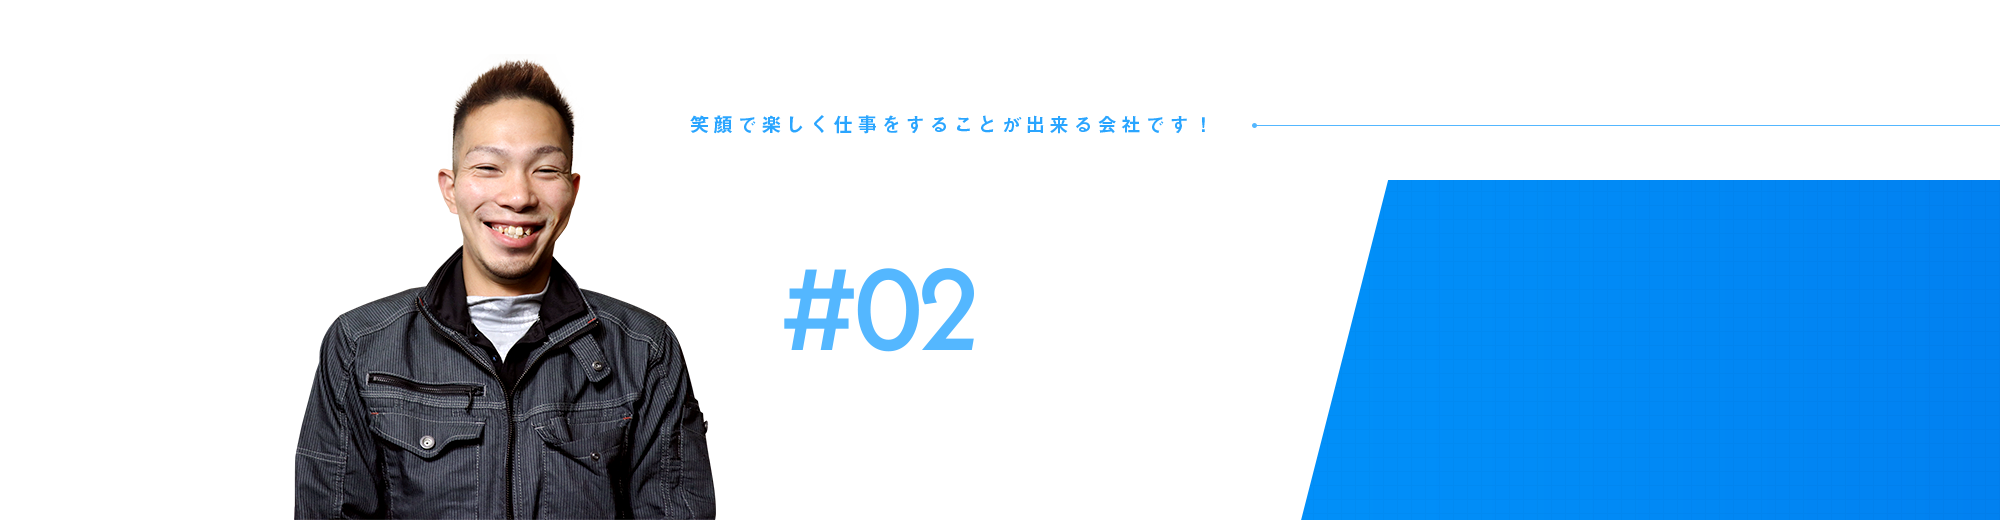 従業員インタビュー#02